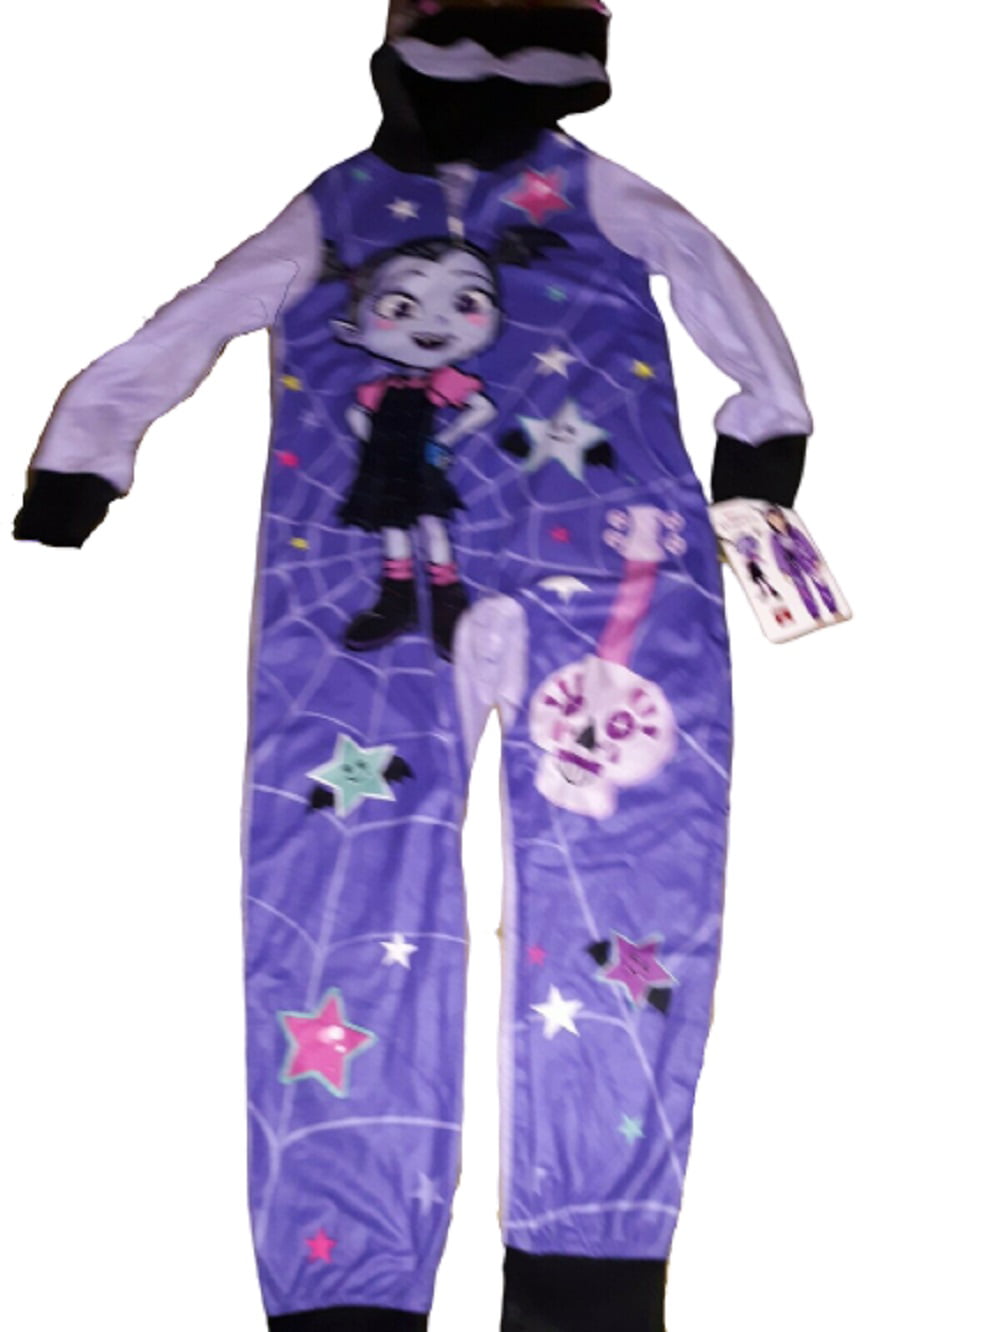 Girls Disney Vampirina Union Suit Halloween Pajamas One Piece Dress Up 8 10 